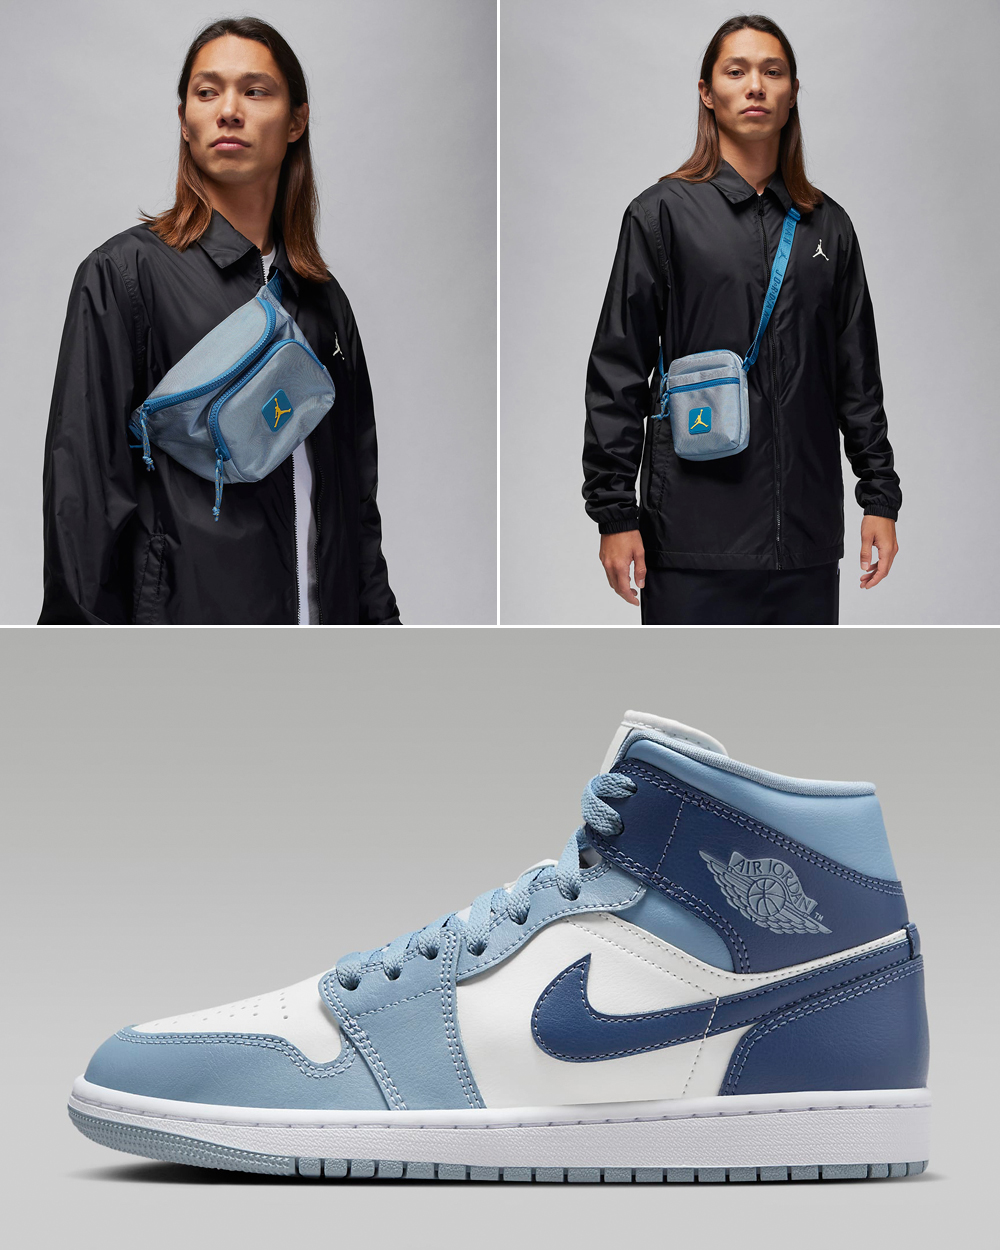 Air-Jordan-1-Mid-Womens-Blue-Grey-Diffused-Blue-Bags